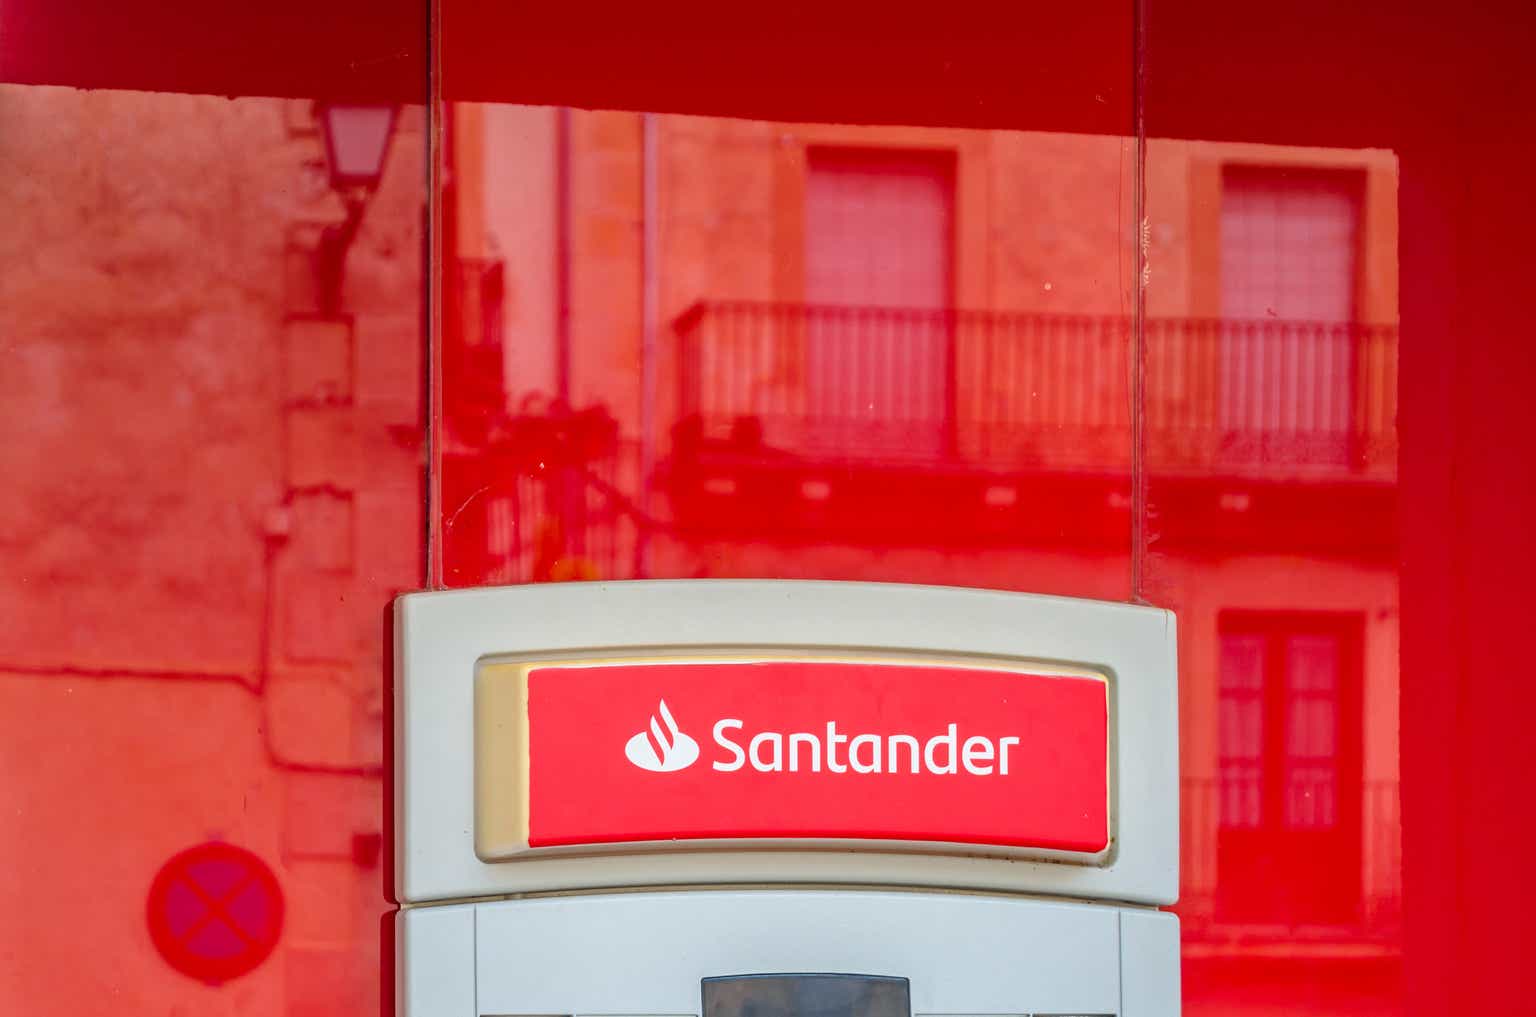 Banco Santander Strong Liquidity Position Trading At Just 55x Earnings Nysesan Seeking Alpha 4089